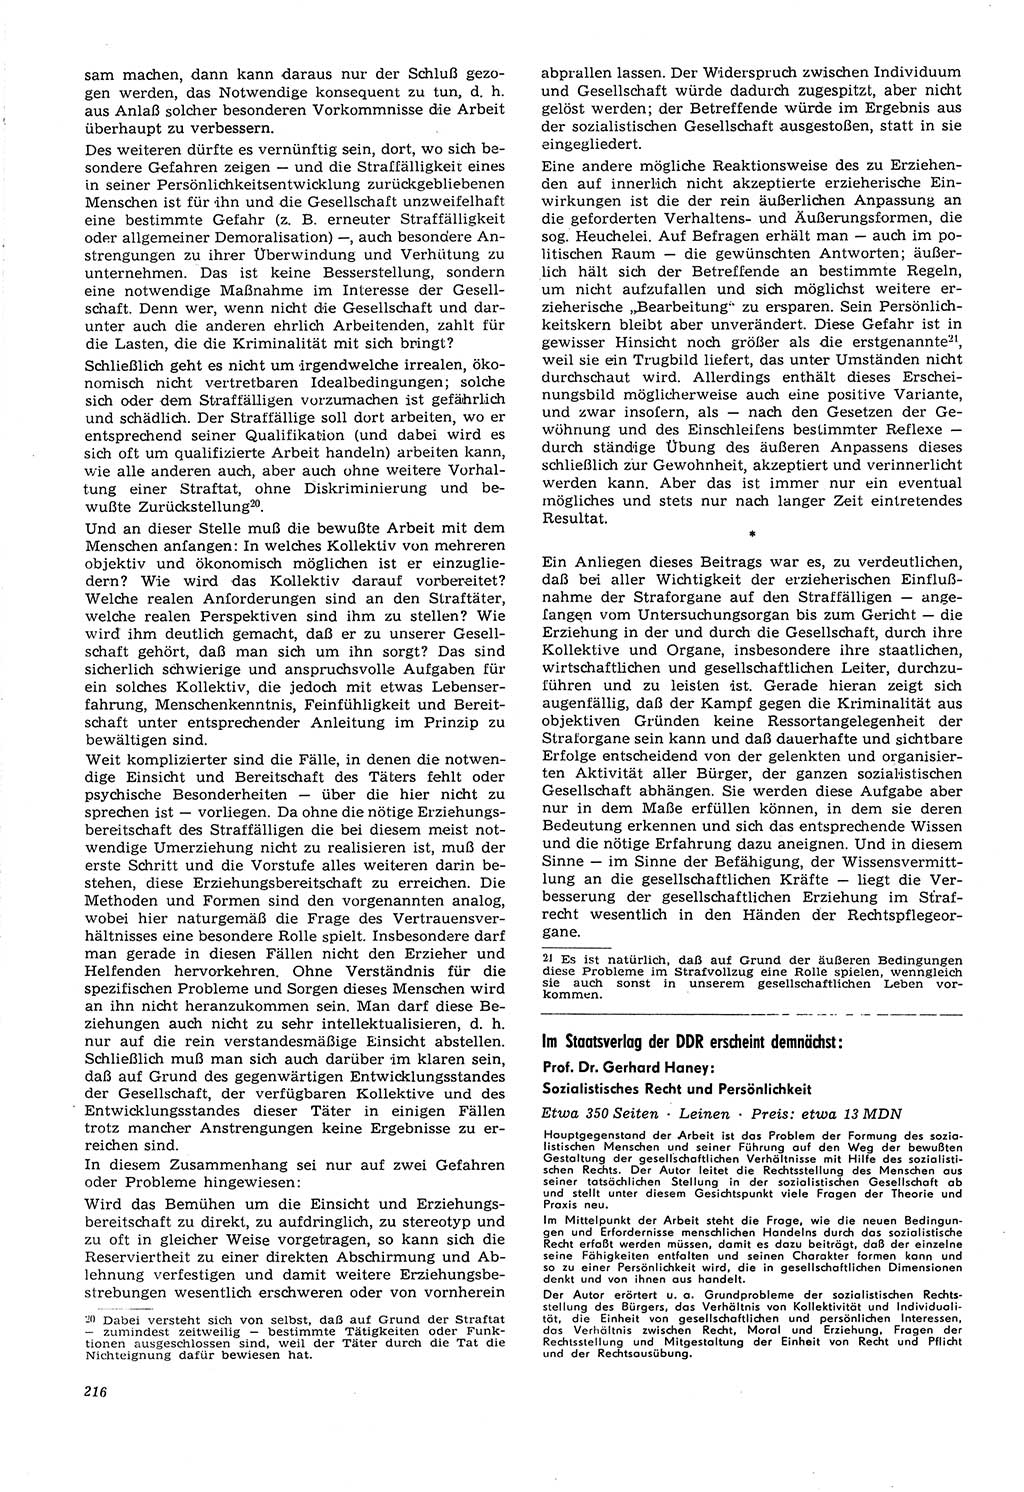 Neue Justiz (NJ), Zeitschrift für Recht und Rechtswissenschaft [Deutsche Demokratische Republik (DDR)], 21. Jahrgang 1967, Seite 216 (NJ DDR 1967, S. 216)